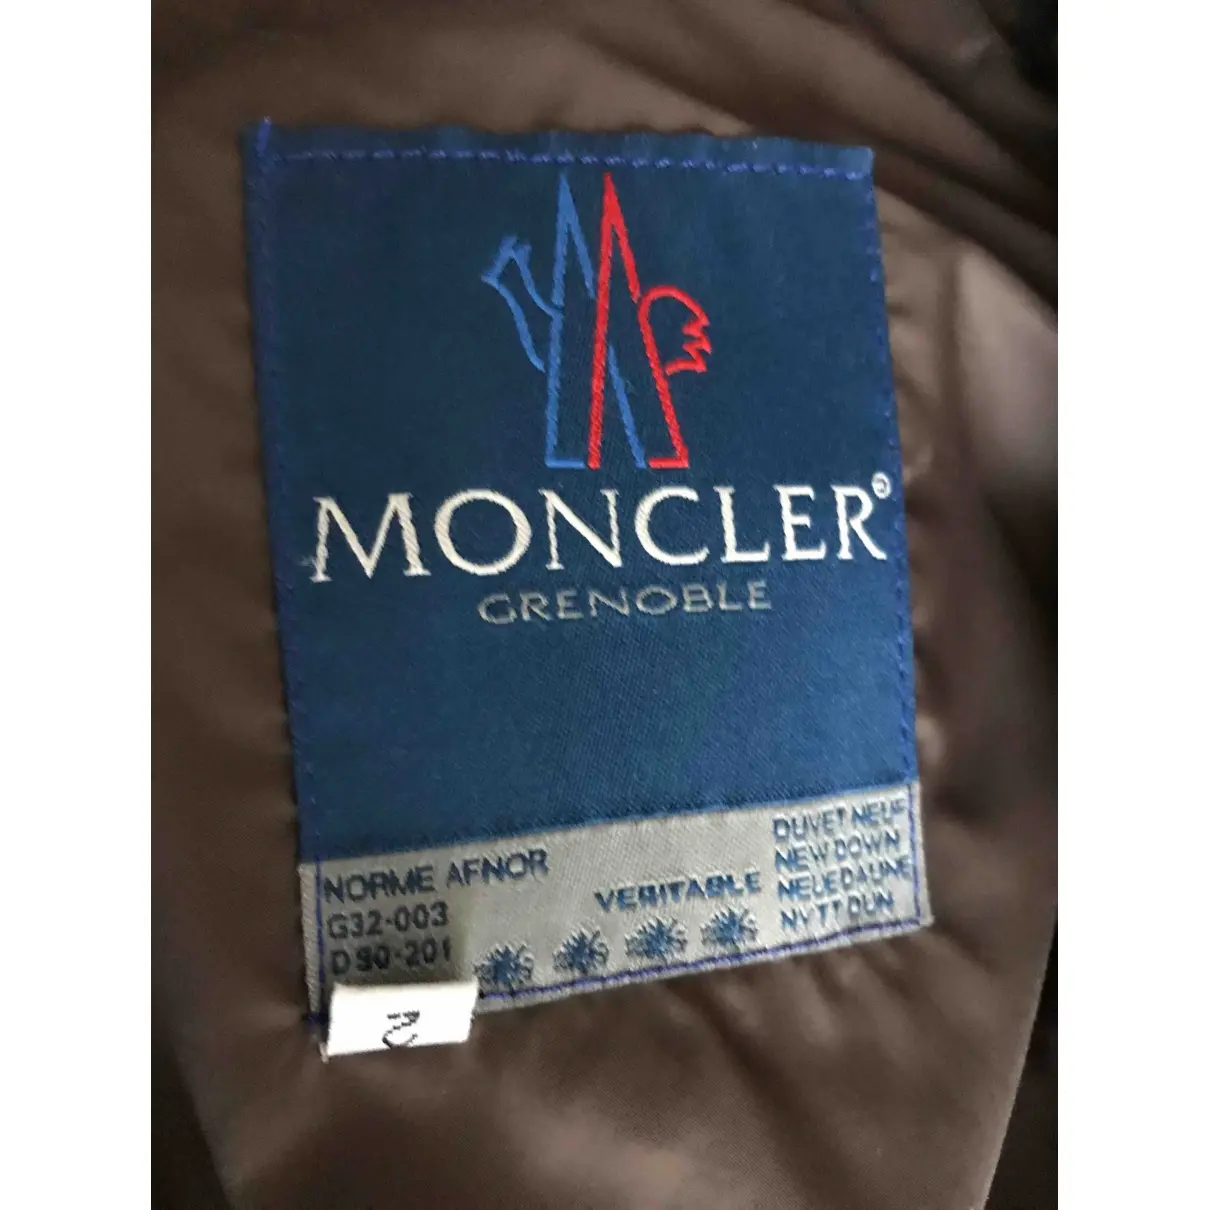 Buy Moncler Grenoble puffer online